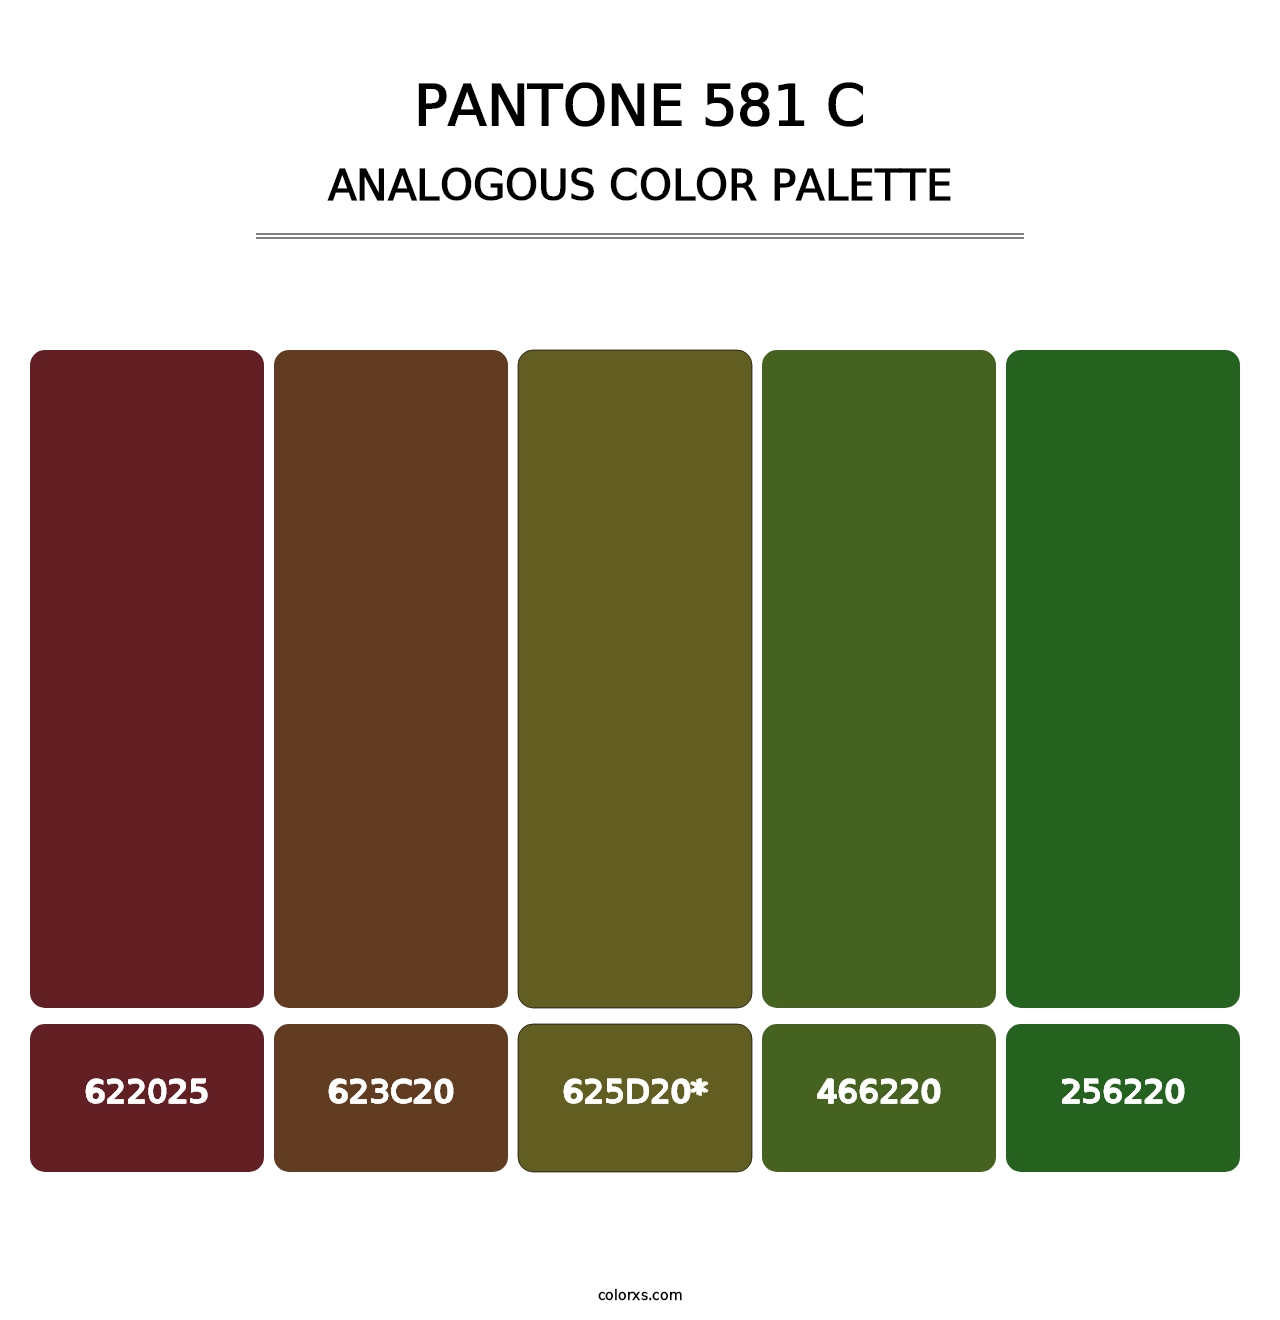 PANTONE 581 C - Analogous Color Palette